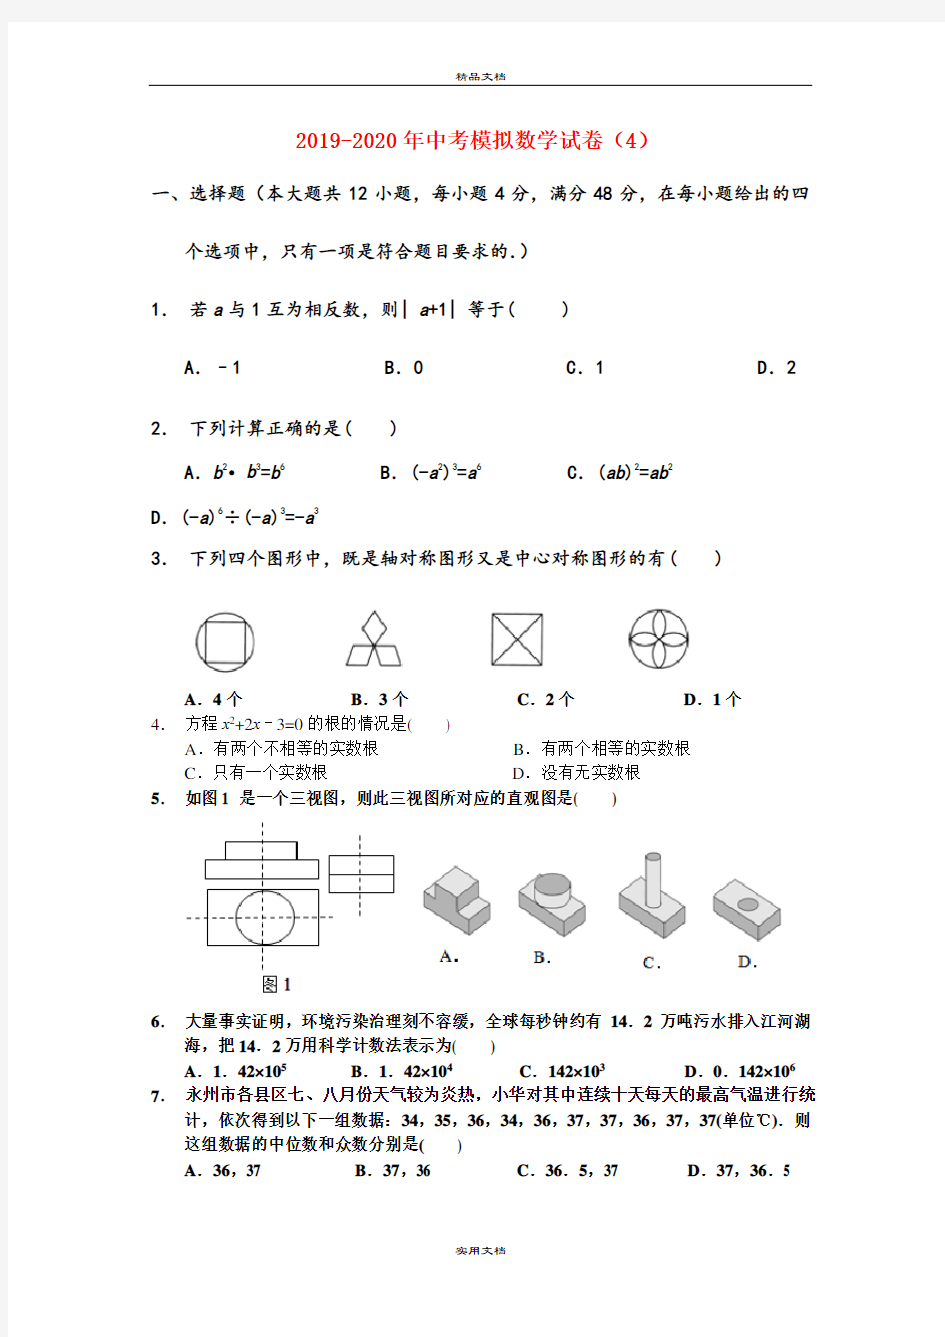 中考模拟数学试卷(4)